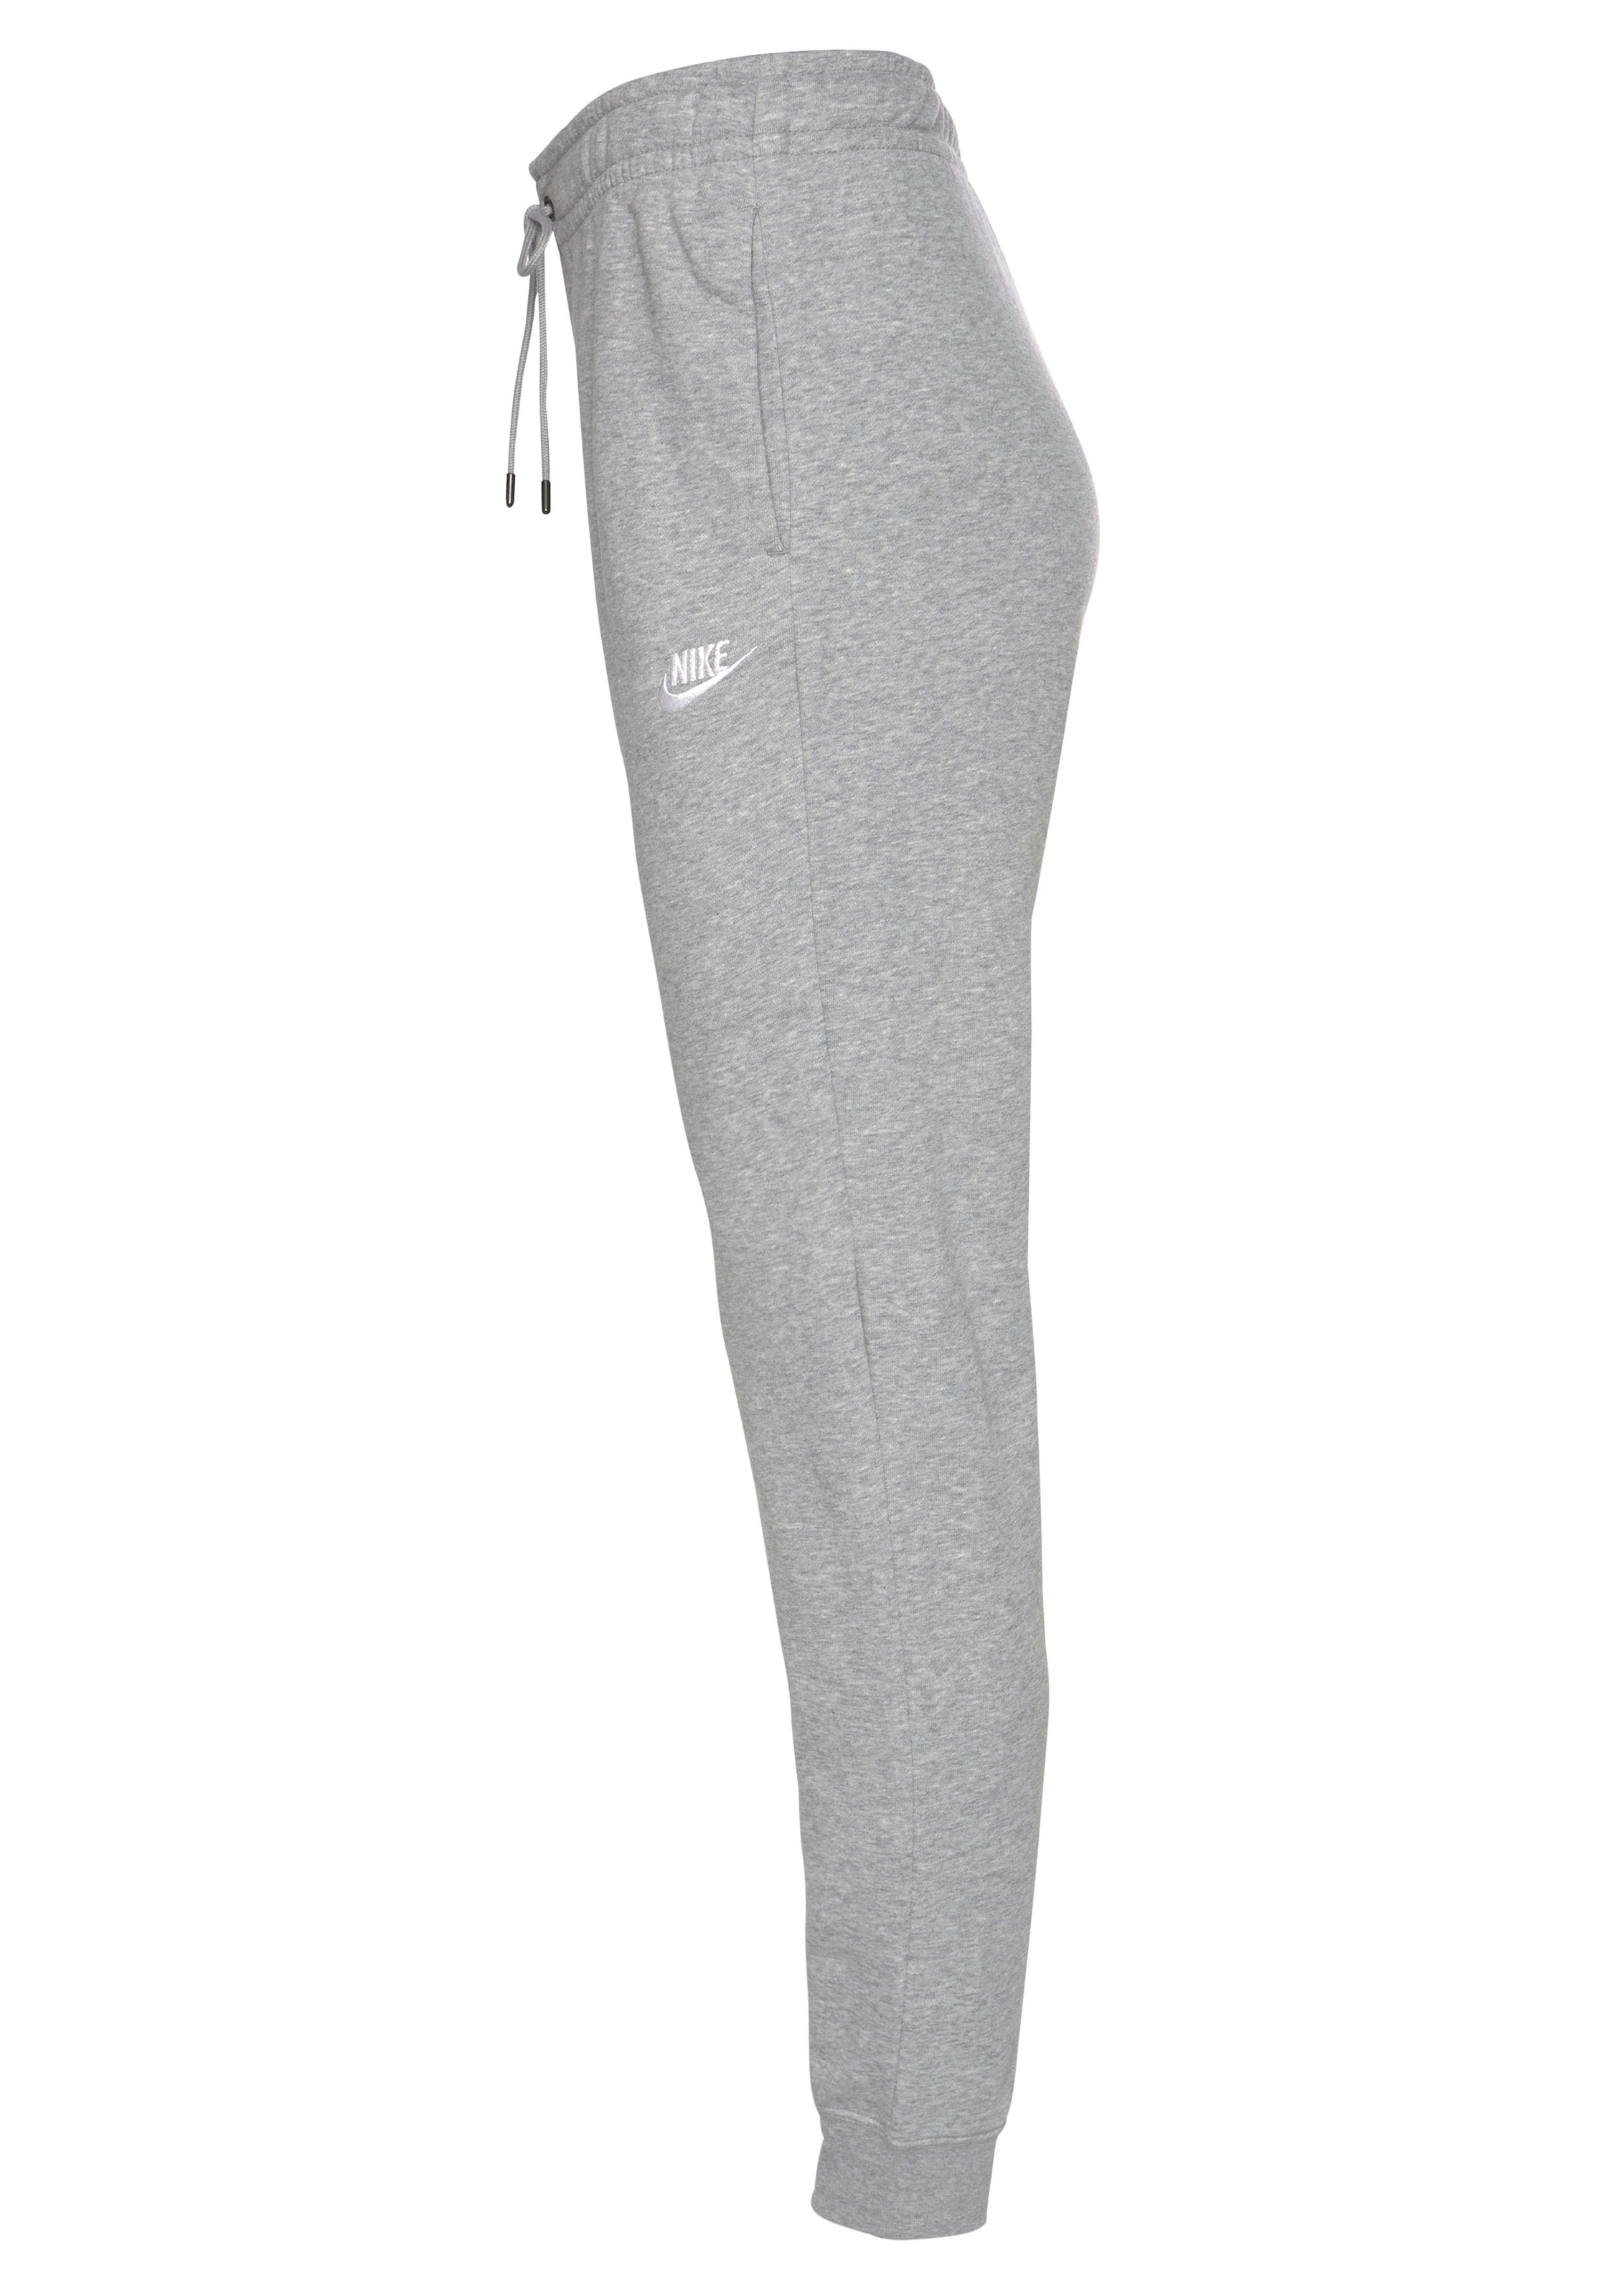 FLEECE Jogginghose Nike PANTS« »ESSENTIAL Sportswear bestellen WOMENS